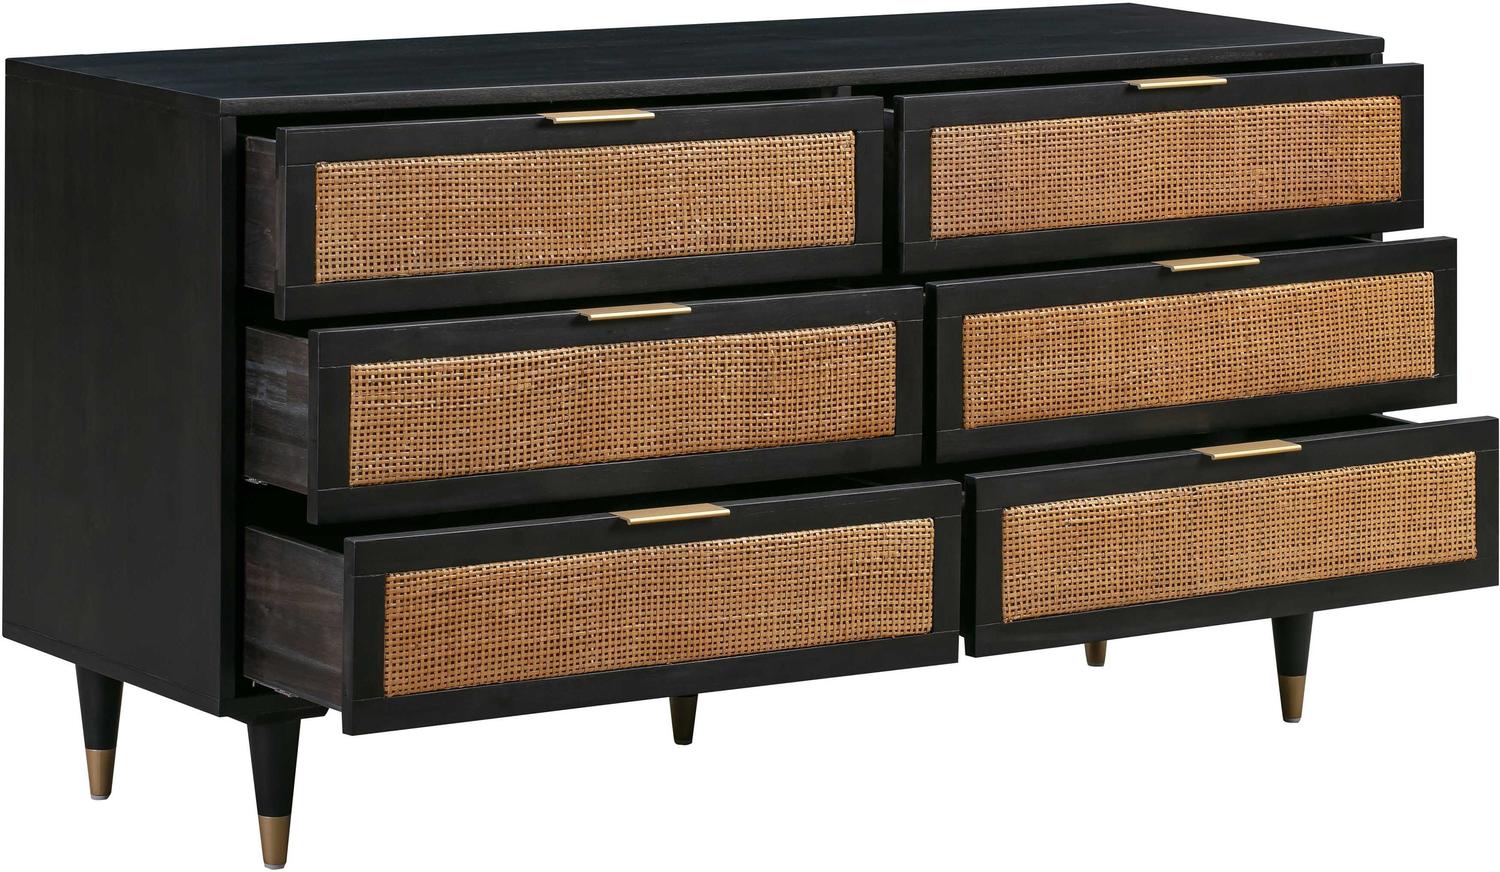 chestnut color dresser Tov Furniture Dressers Black